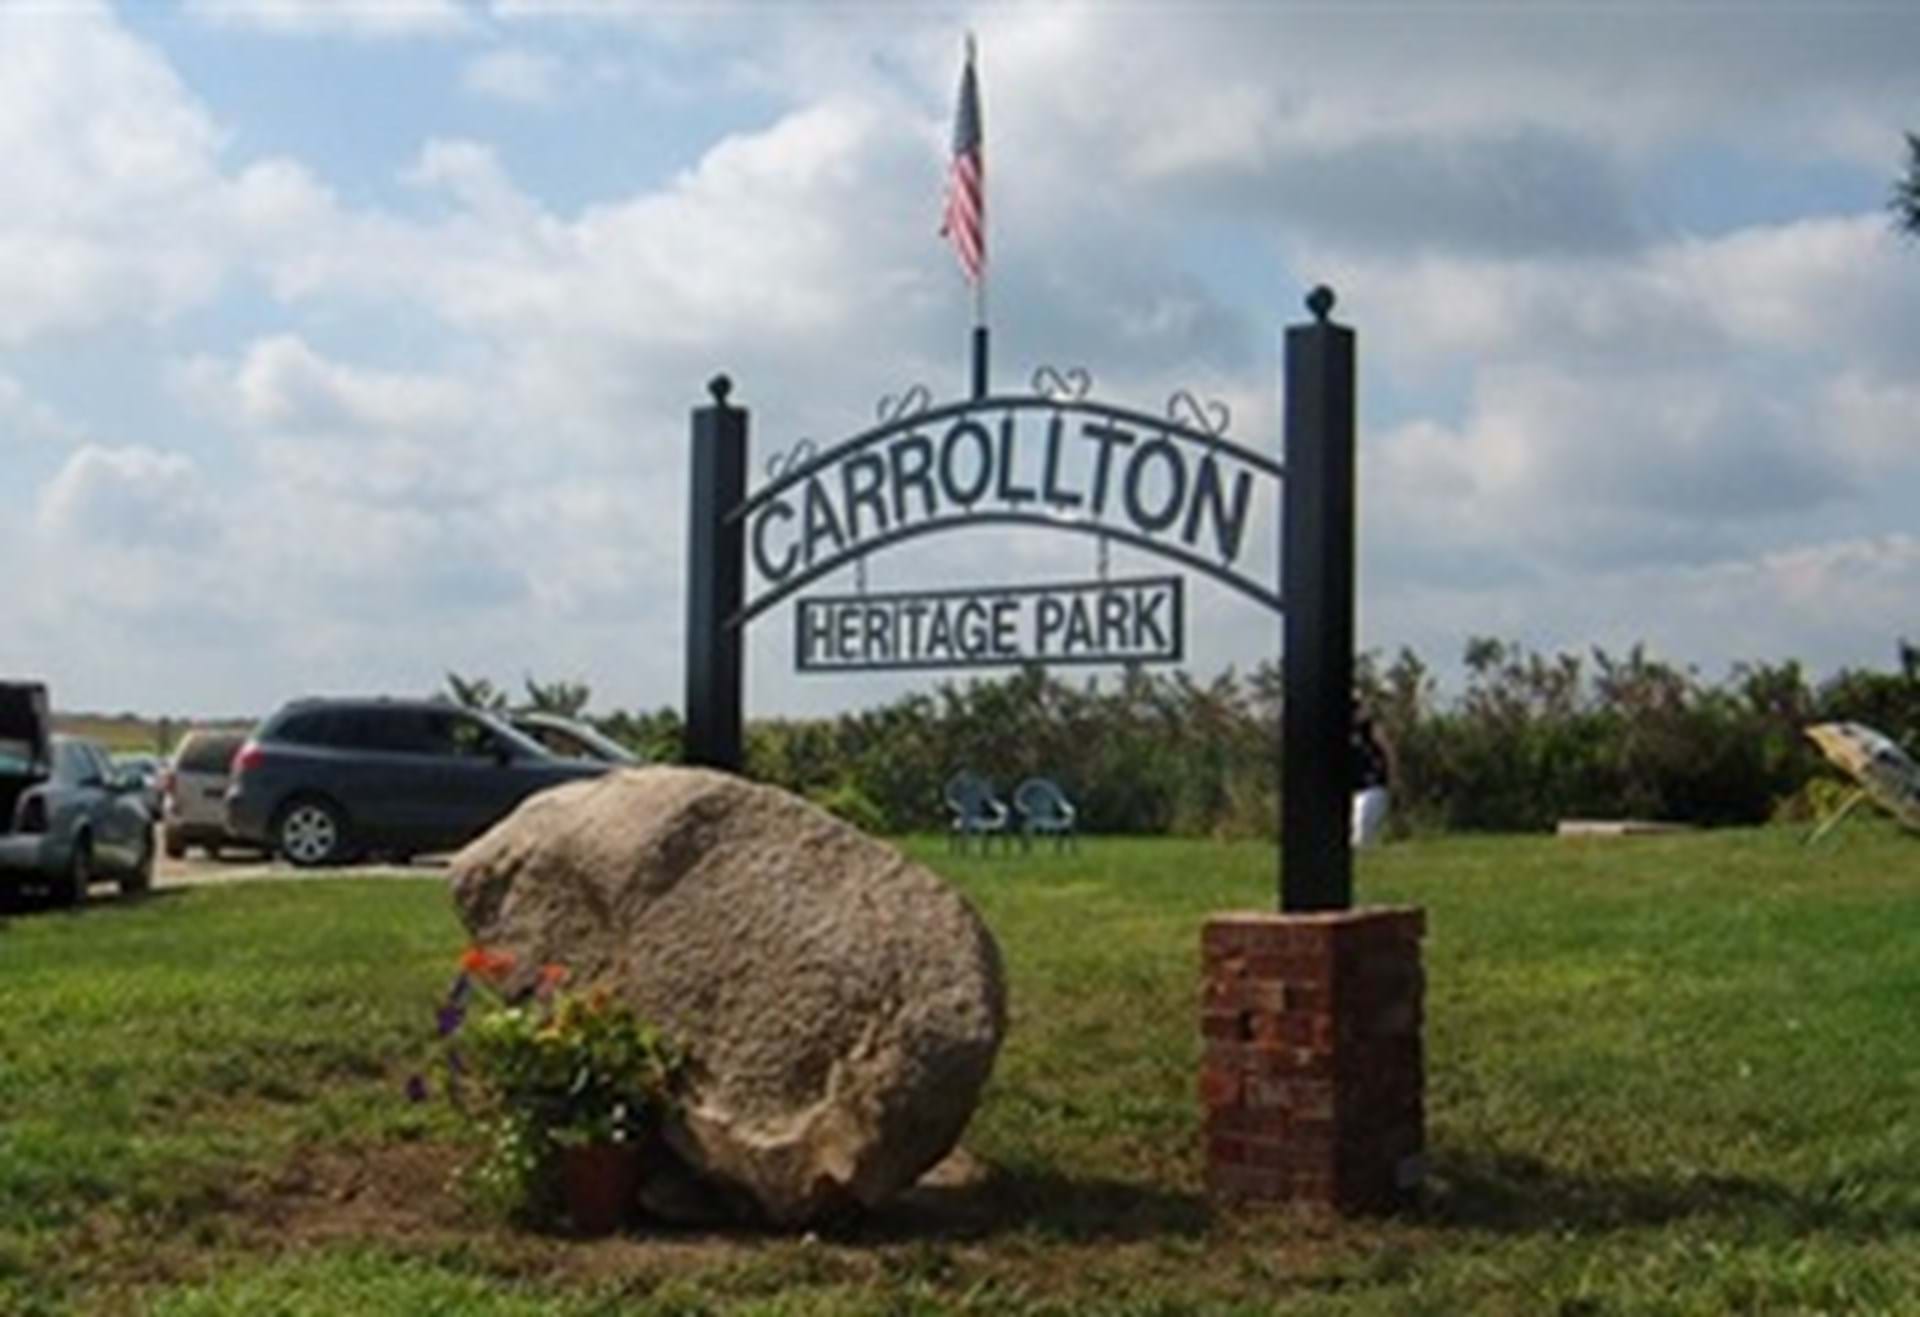 Carrollton Heritage Park